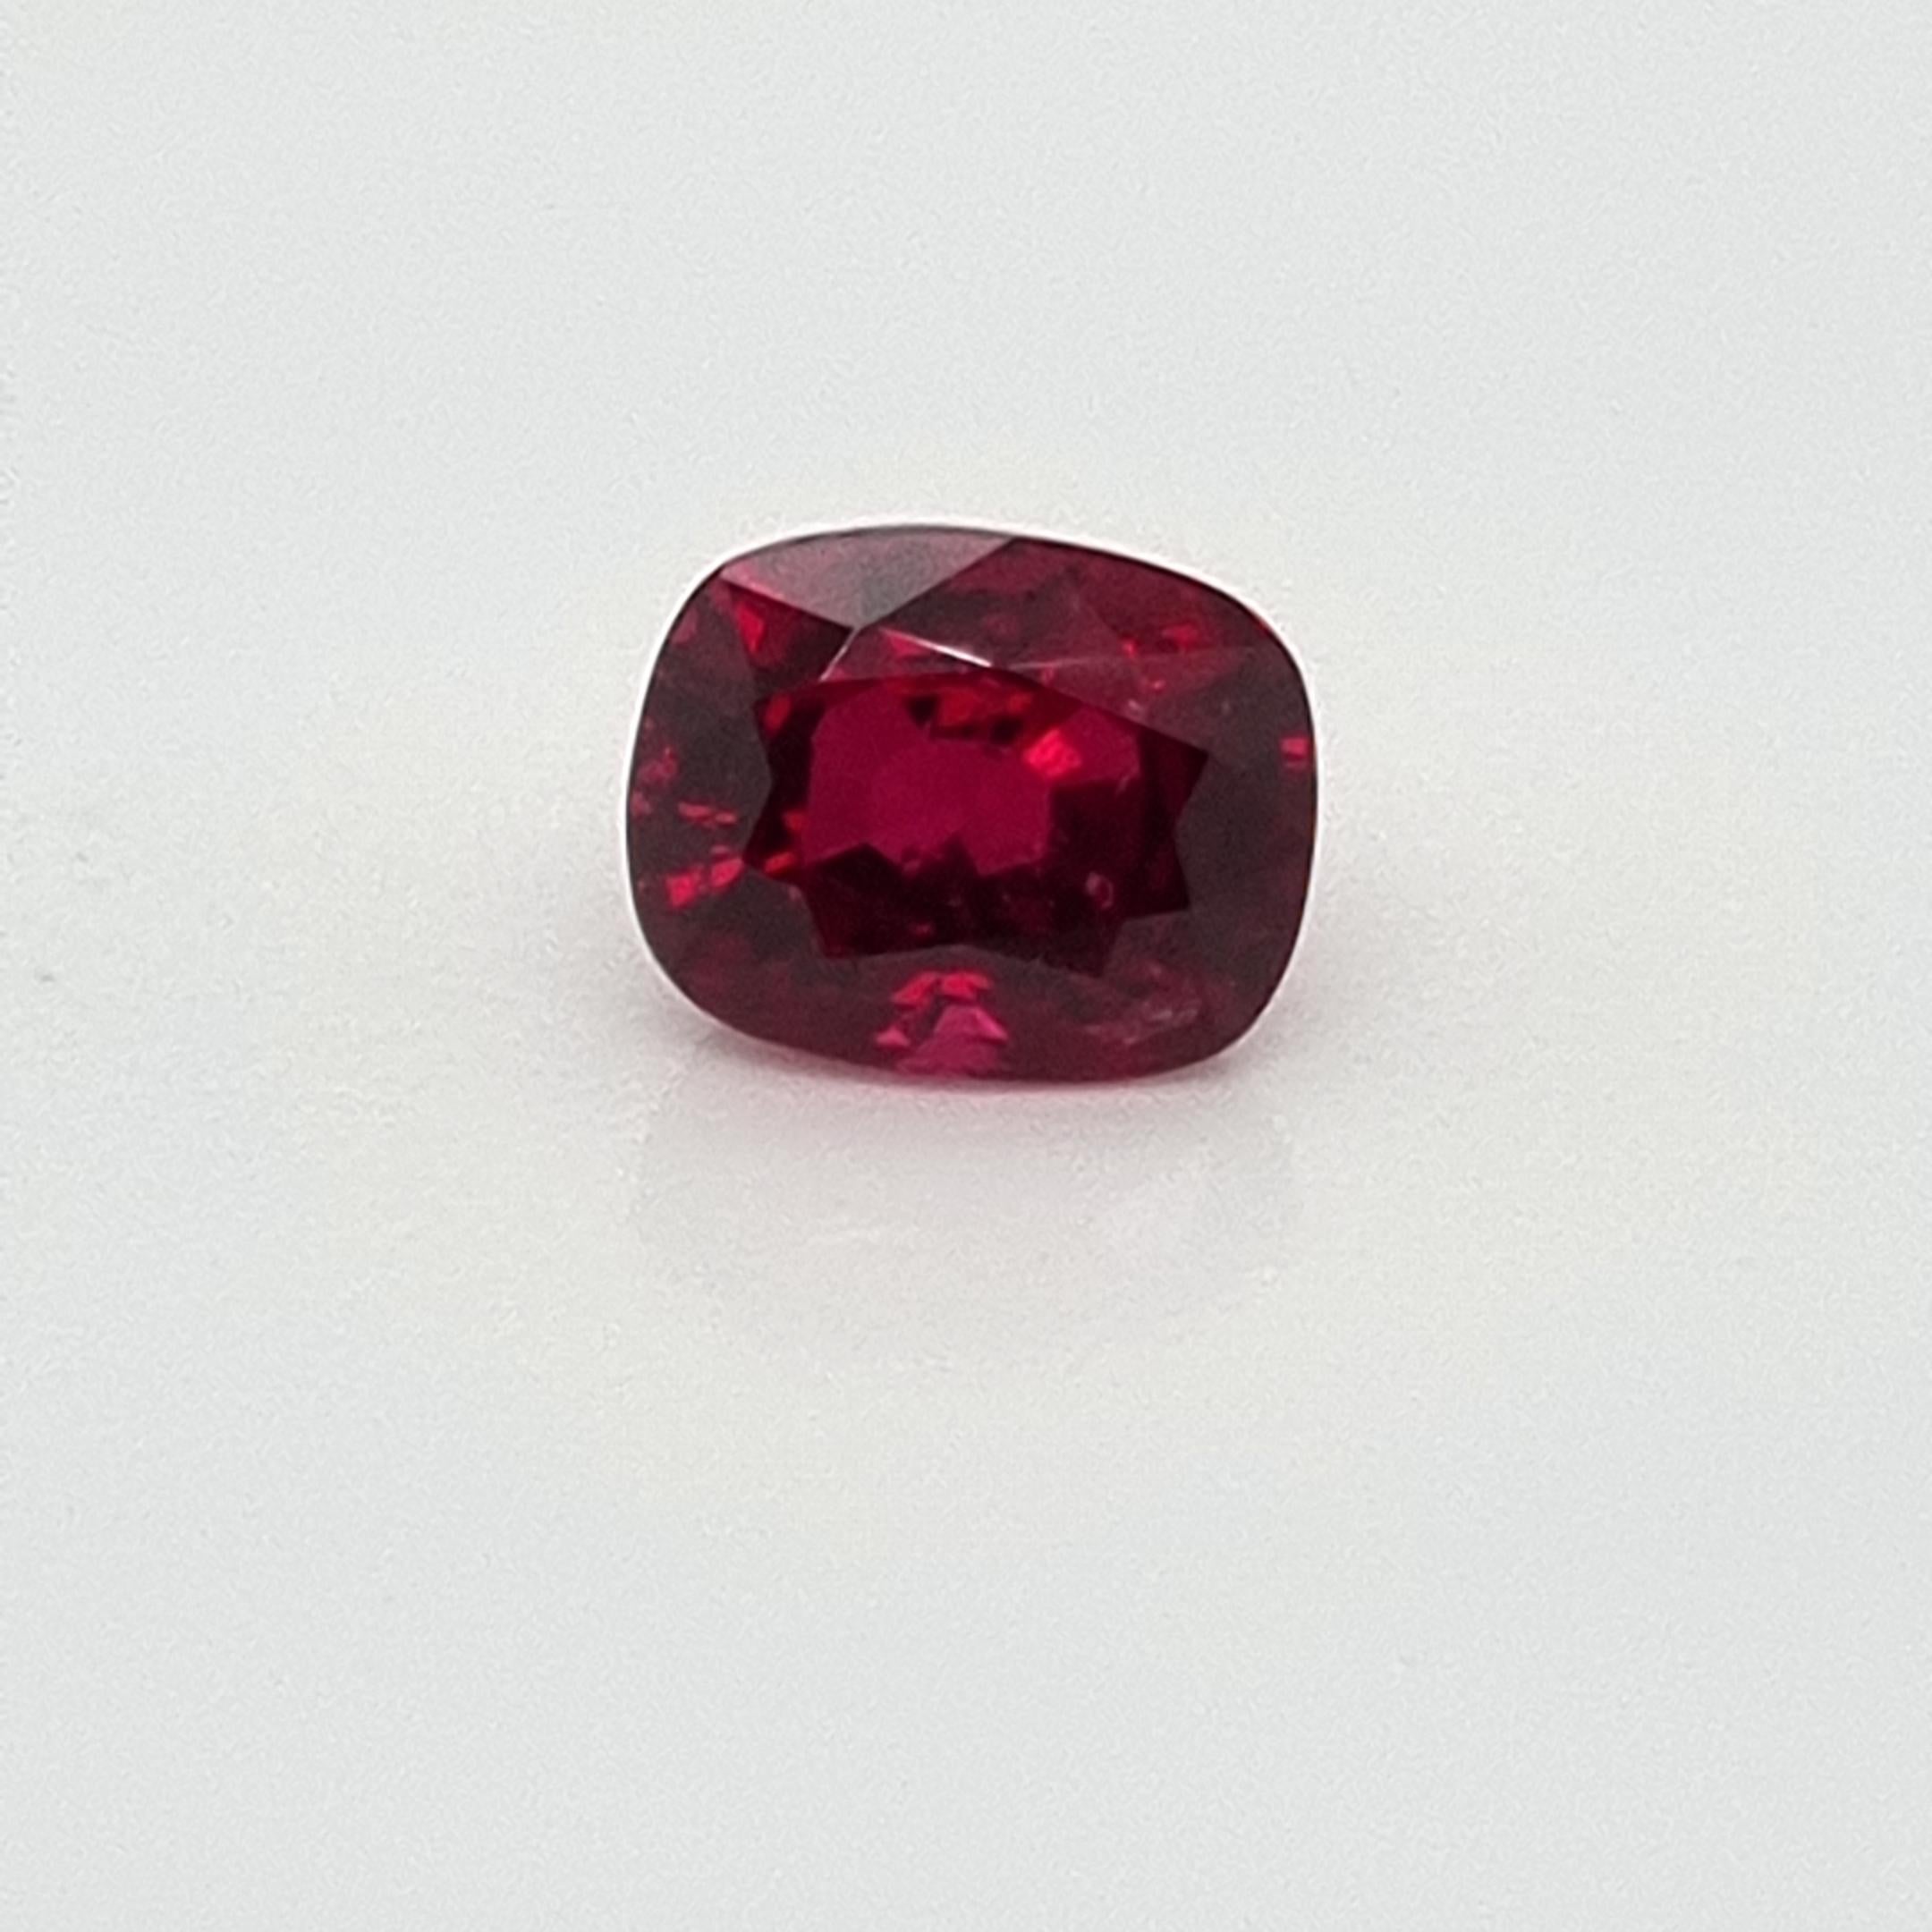 Dieser schöne, unerhitzte rote Rubin aus Burma ist der perfekte Stein für alle, die ihre Sammlung feiner und einzigartiger Edelsteine erweitern möchten. 

Mit einem Gewicht von 2 Karat kann dieser Stein eine breite Kundschaft ansprechen. Er weist